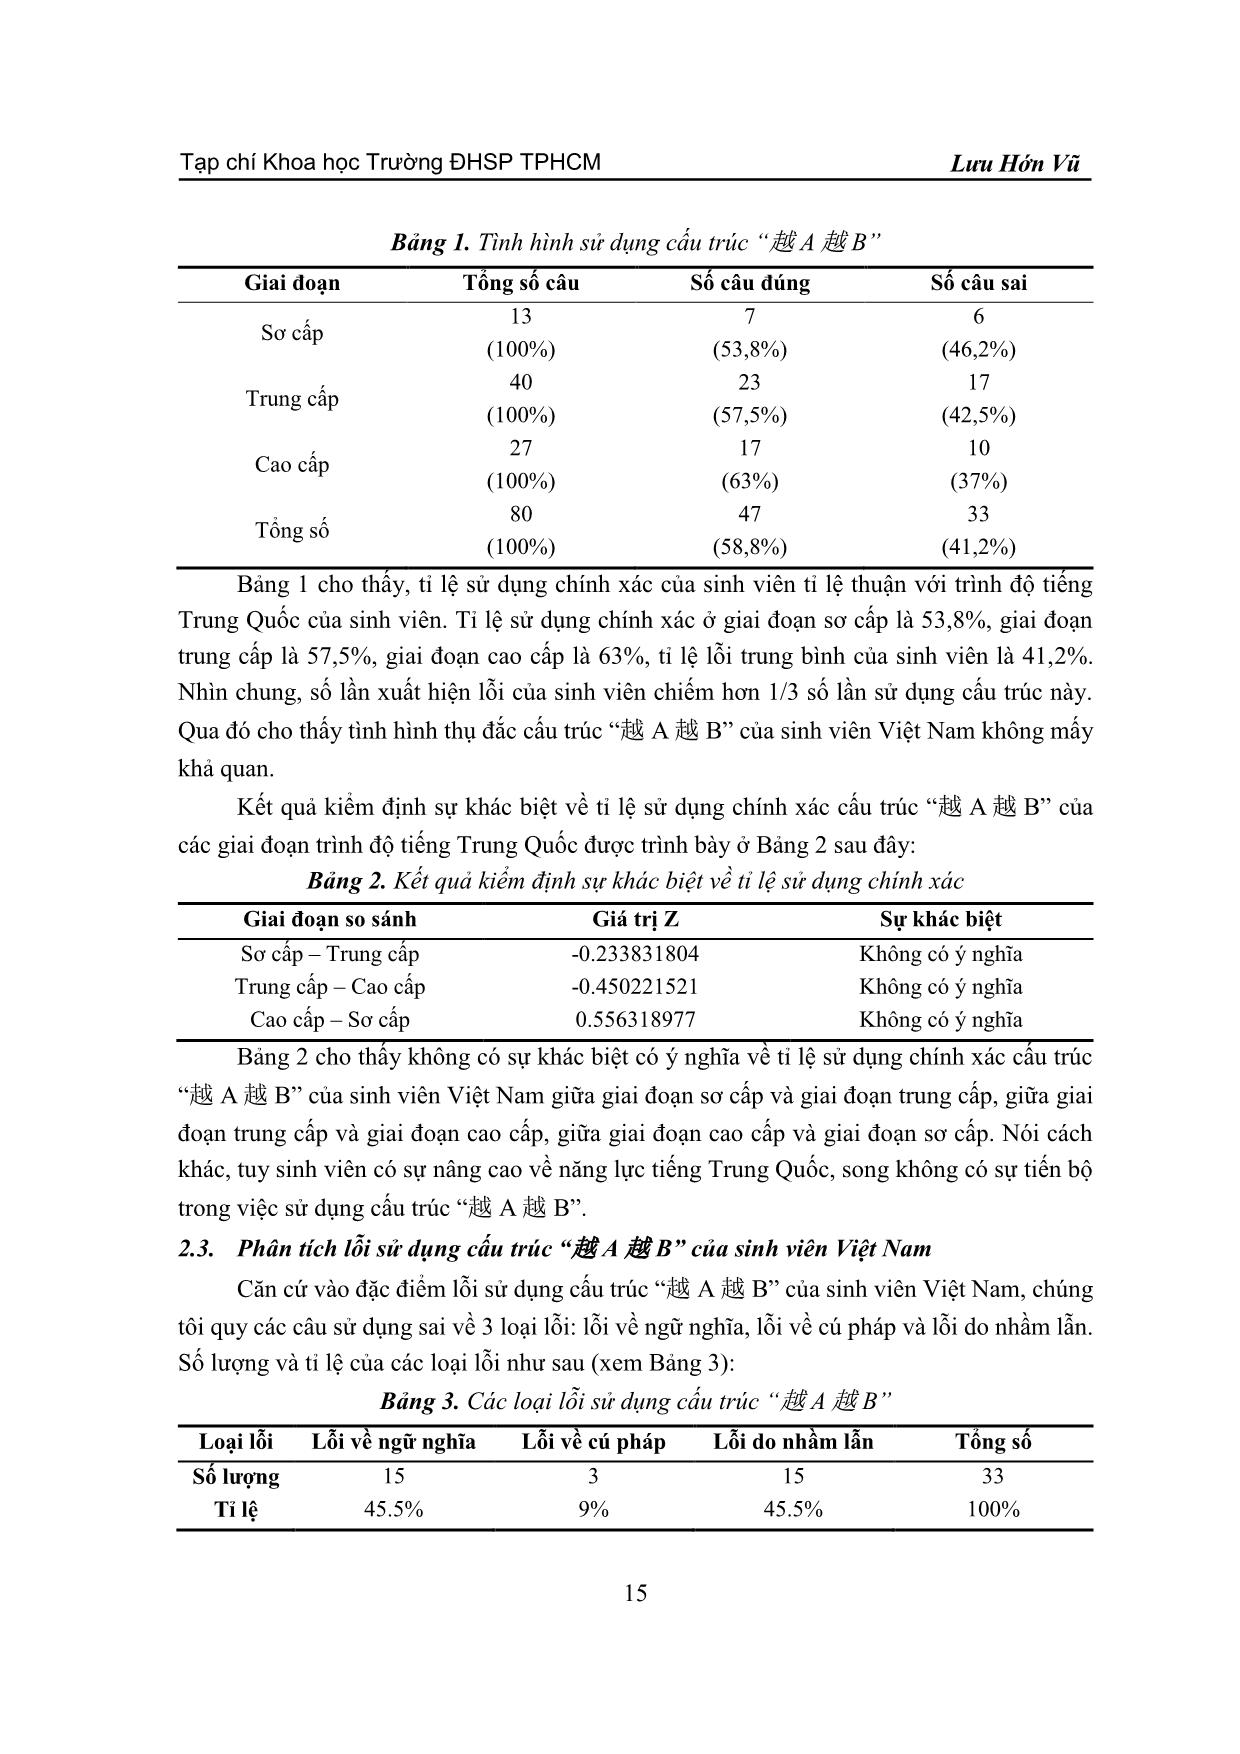 Phân tích lỗi sử dụng cấu trúc “yue A yue B” (越 A 越 B) của sinh viên Việt Nam trang 3